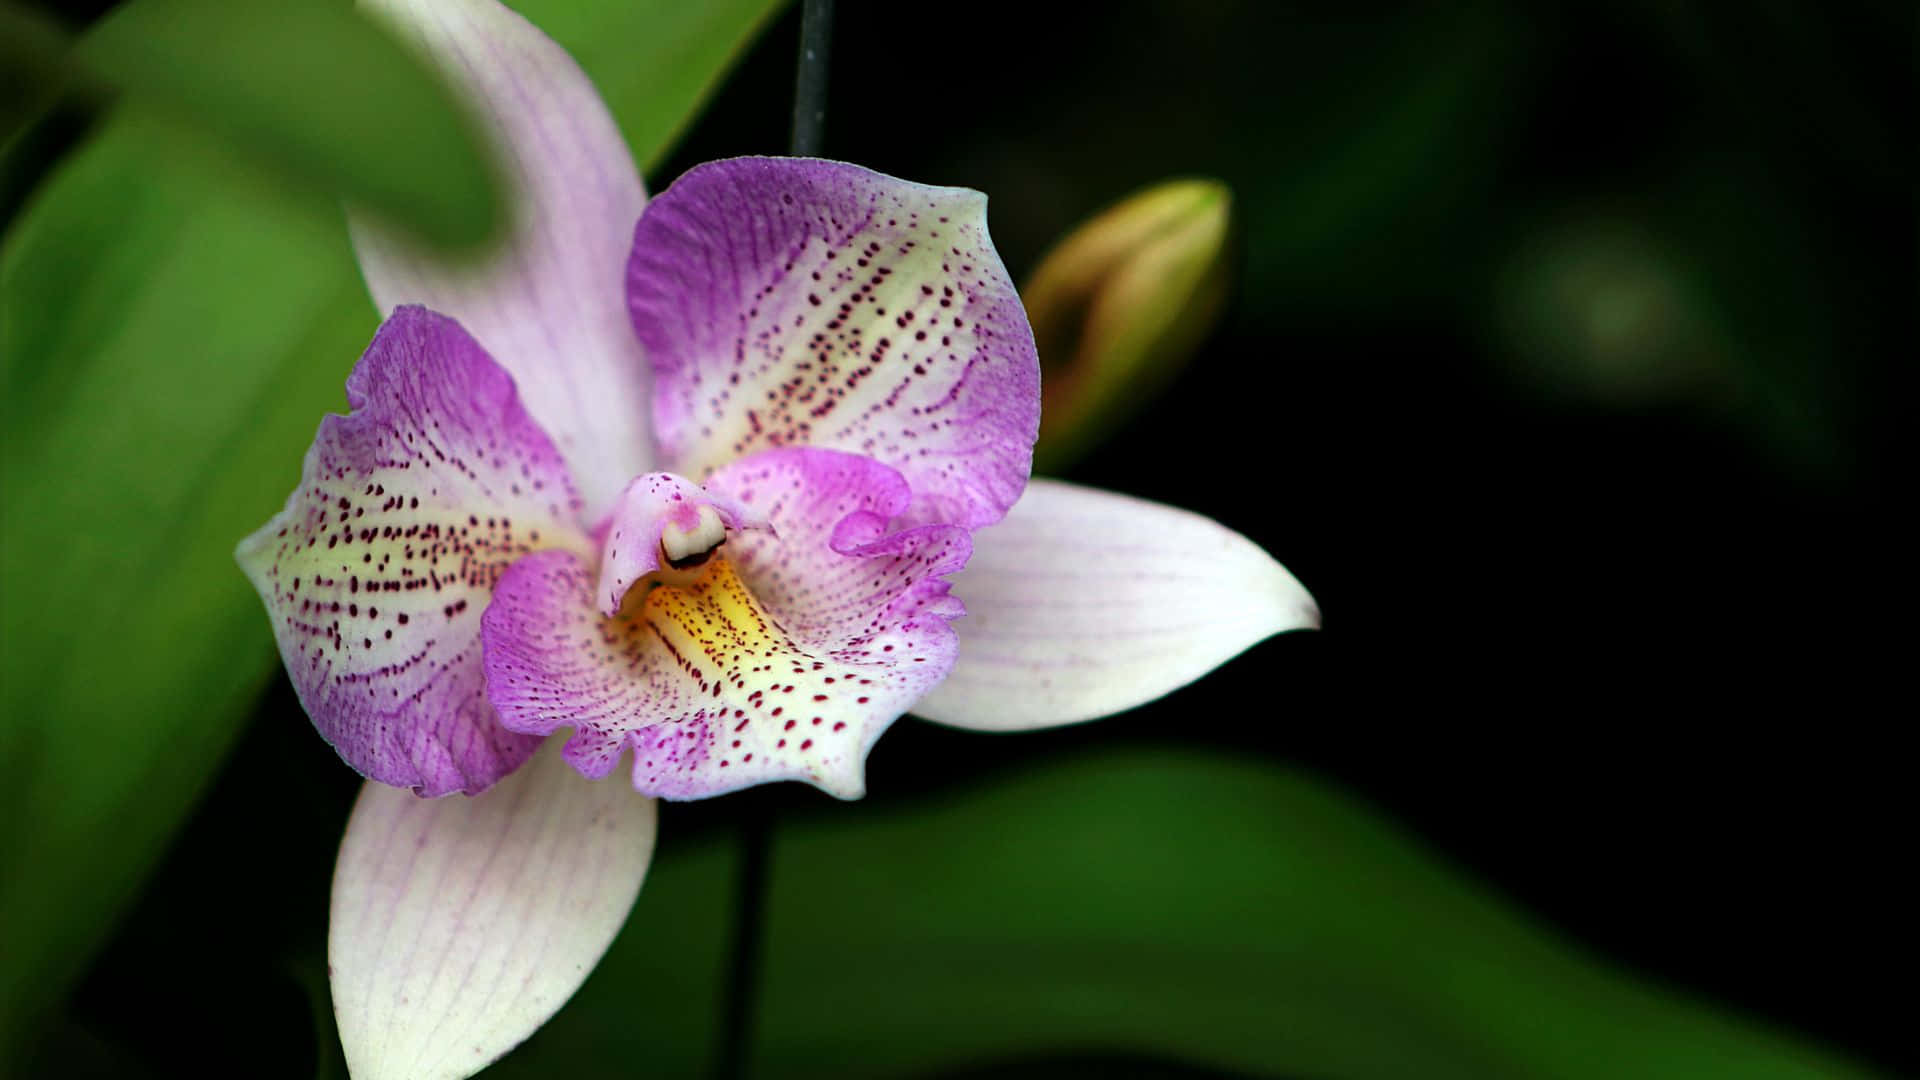 Hellepinke Orchideen Bilden Einen Wunderschönen Hintergrund.